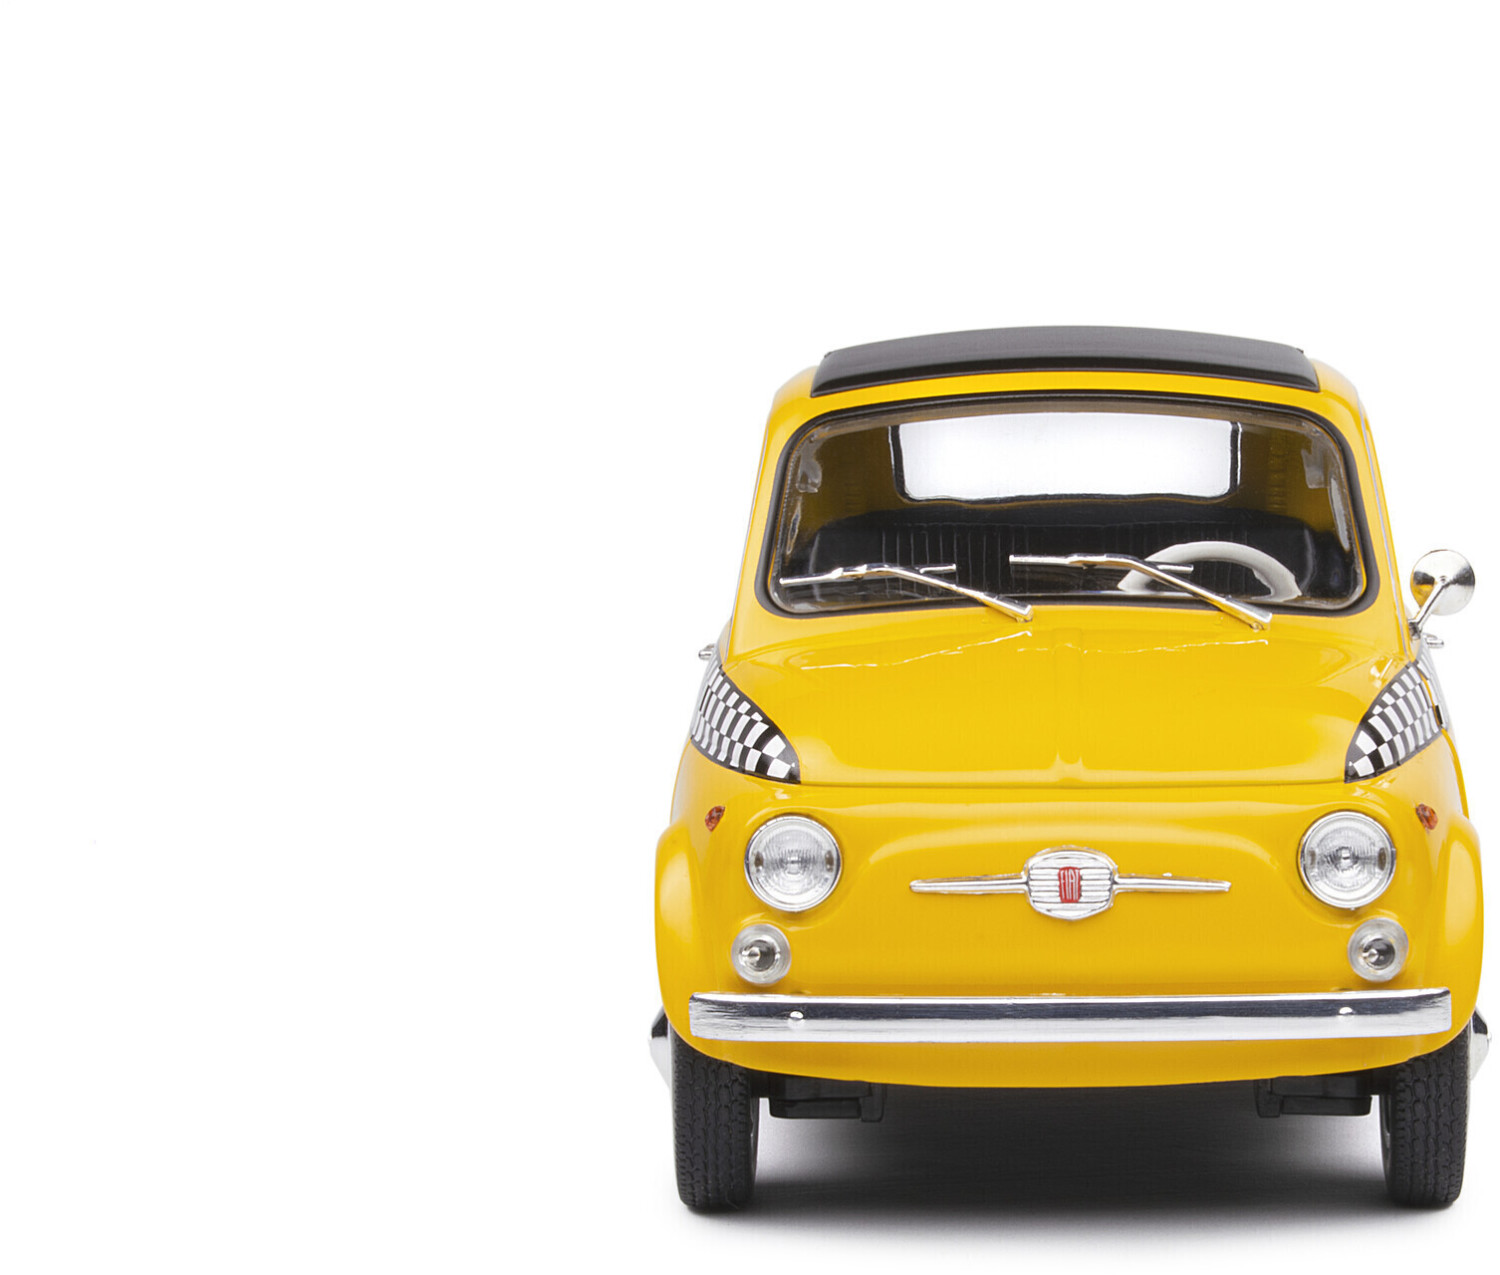 Fiat 500,voiture de poupées